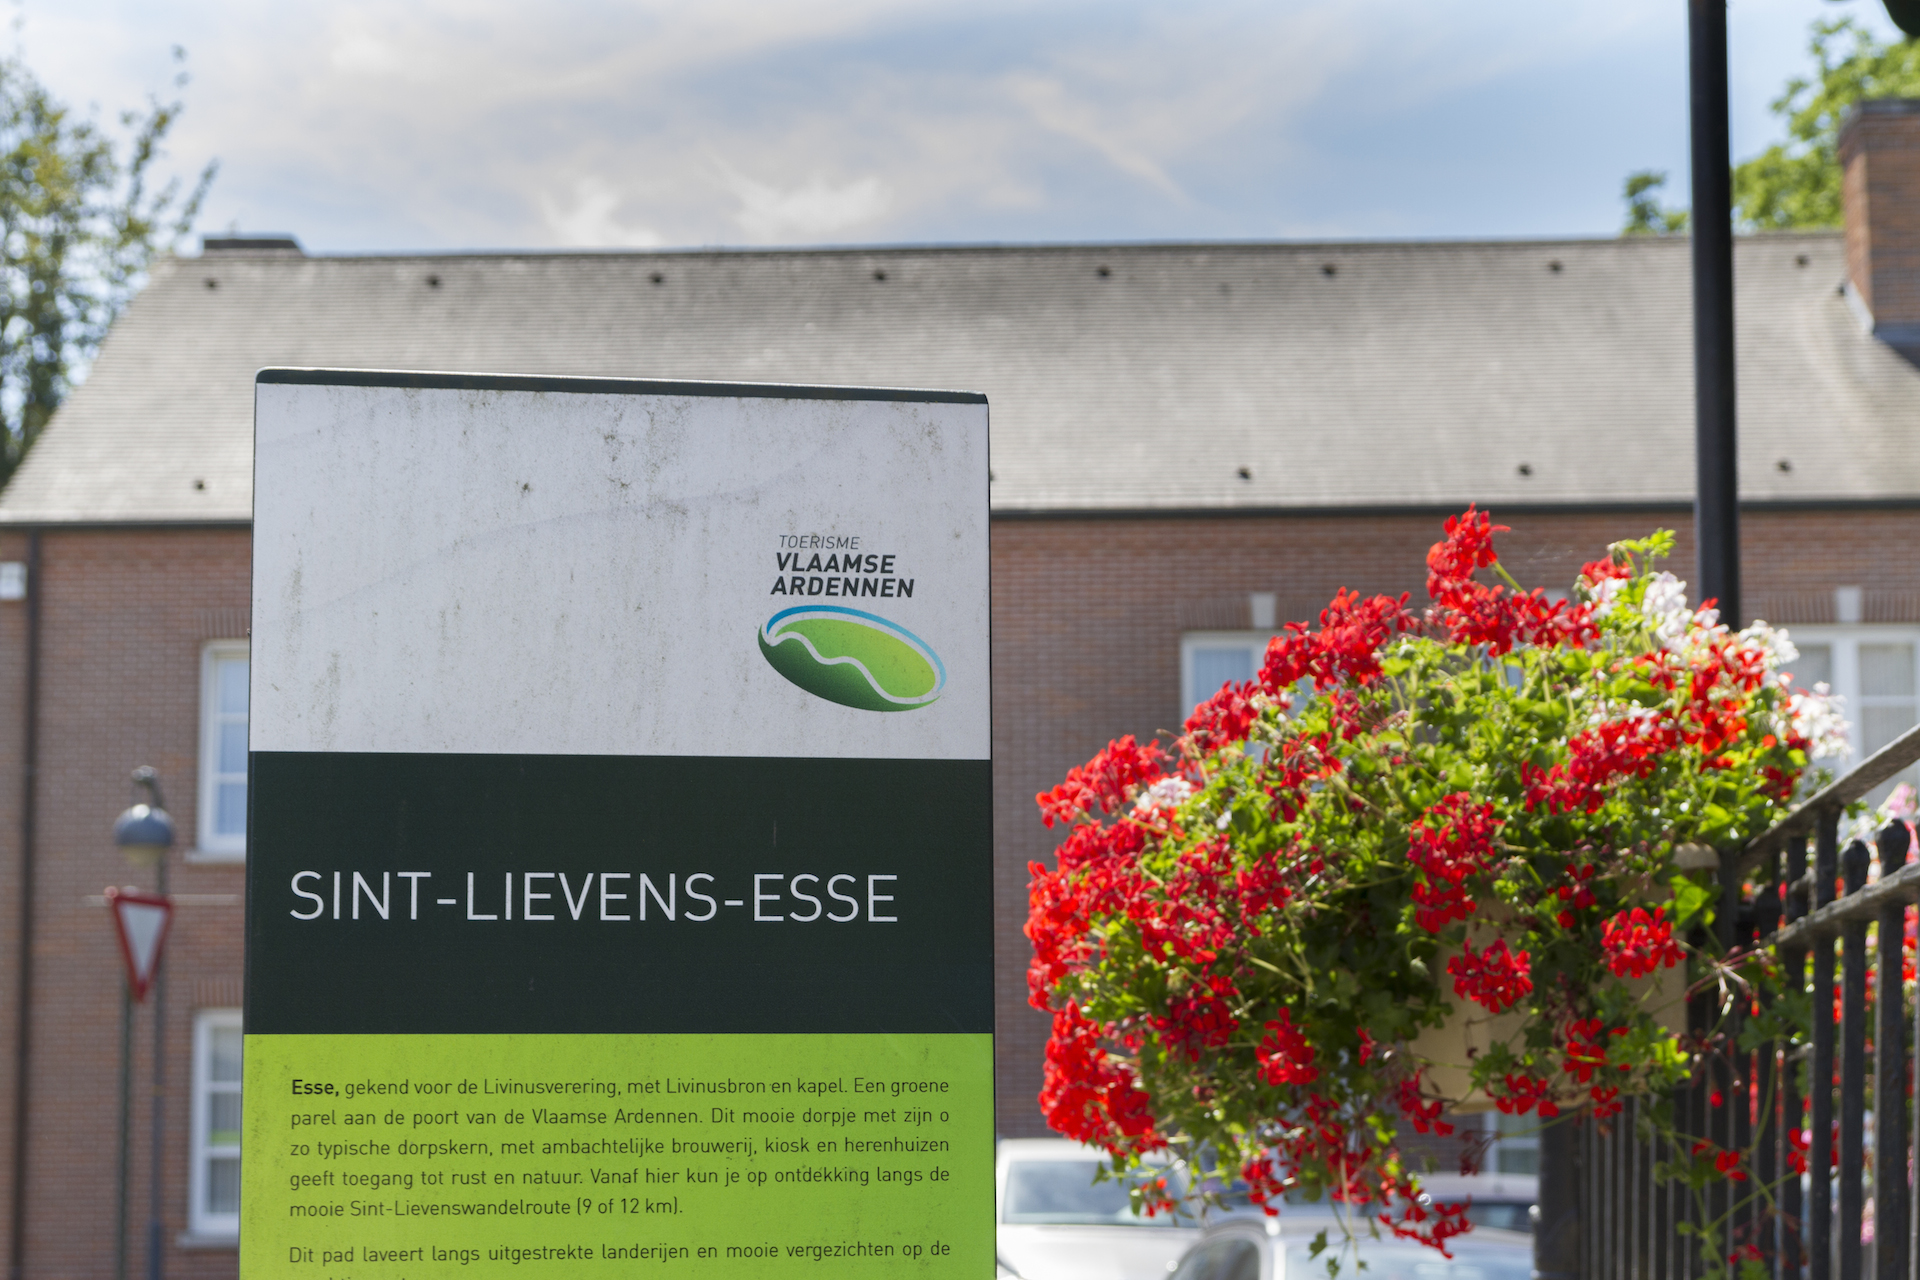 Toerisme Vlaanderen heeft een infobord over de omgeving in Sint-Lieven-Esse, het dorp van Eyndevelde